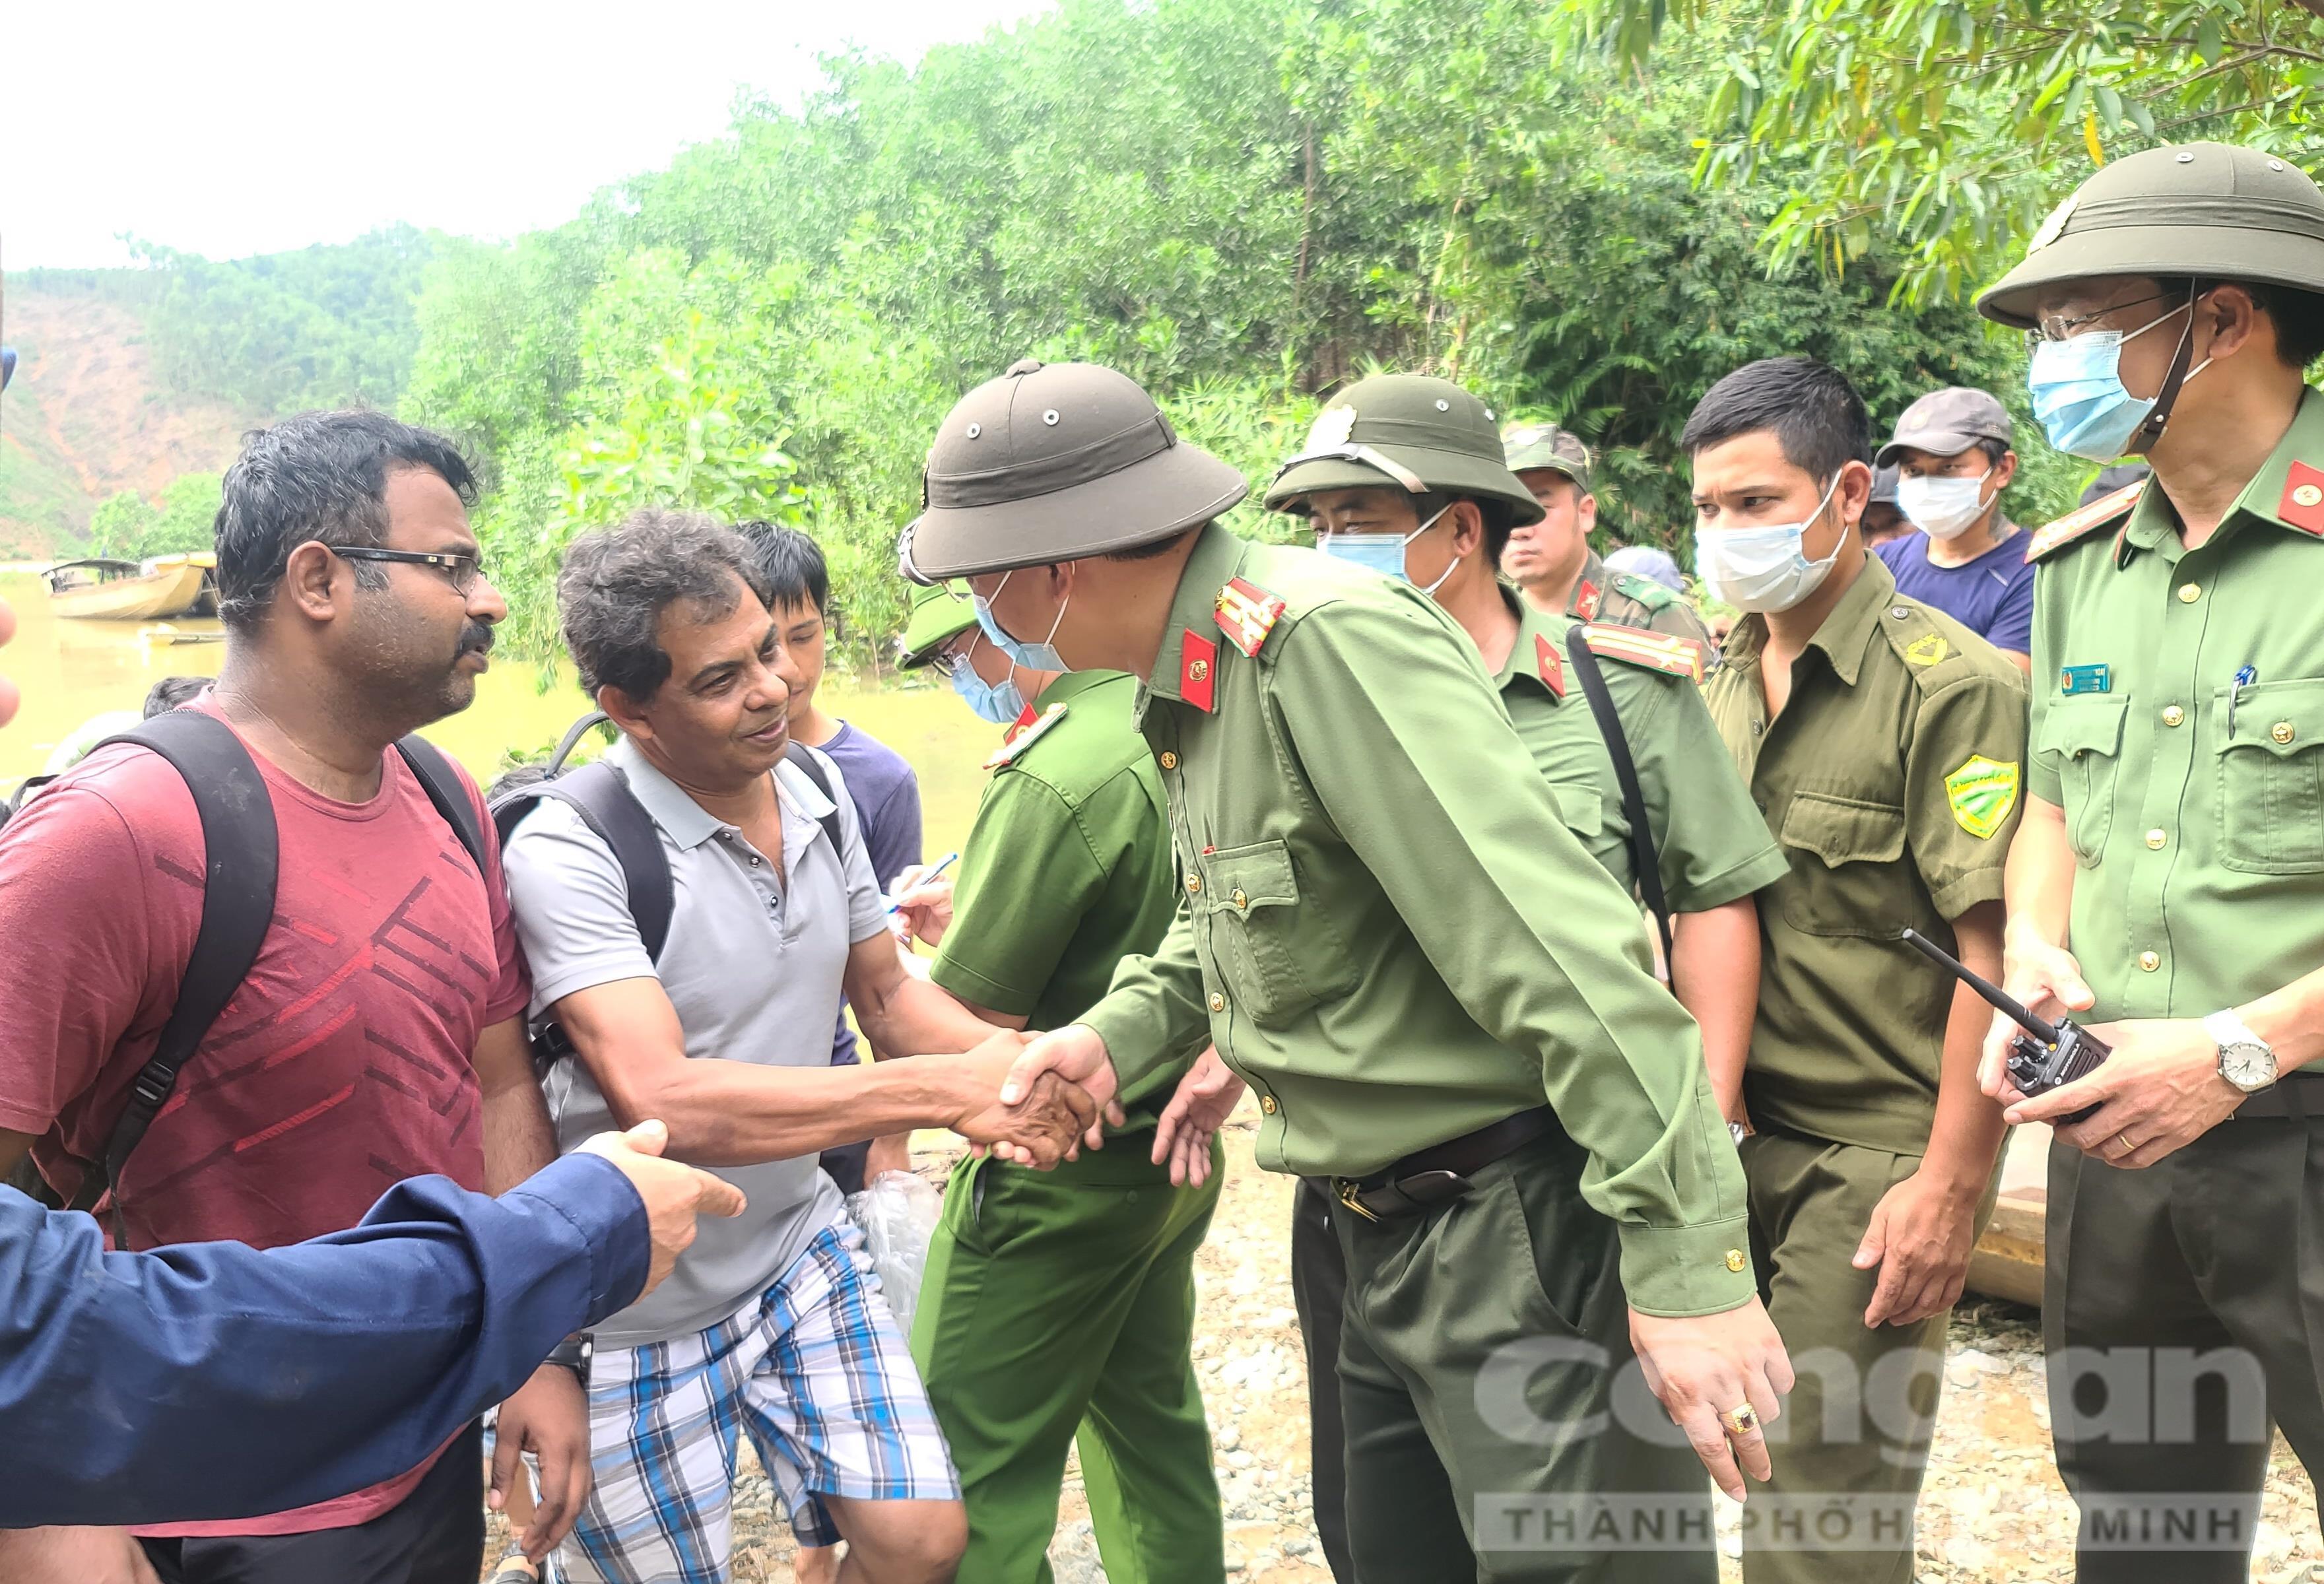 Thượng tá Nguyễn Thanh Tuấn – Giám đốc Công an tỉnh Thừa Thiên – Huế động viên, thăm hỏi chuyên gia Ấn Độ trong đoàn người được cứu hộ.